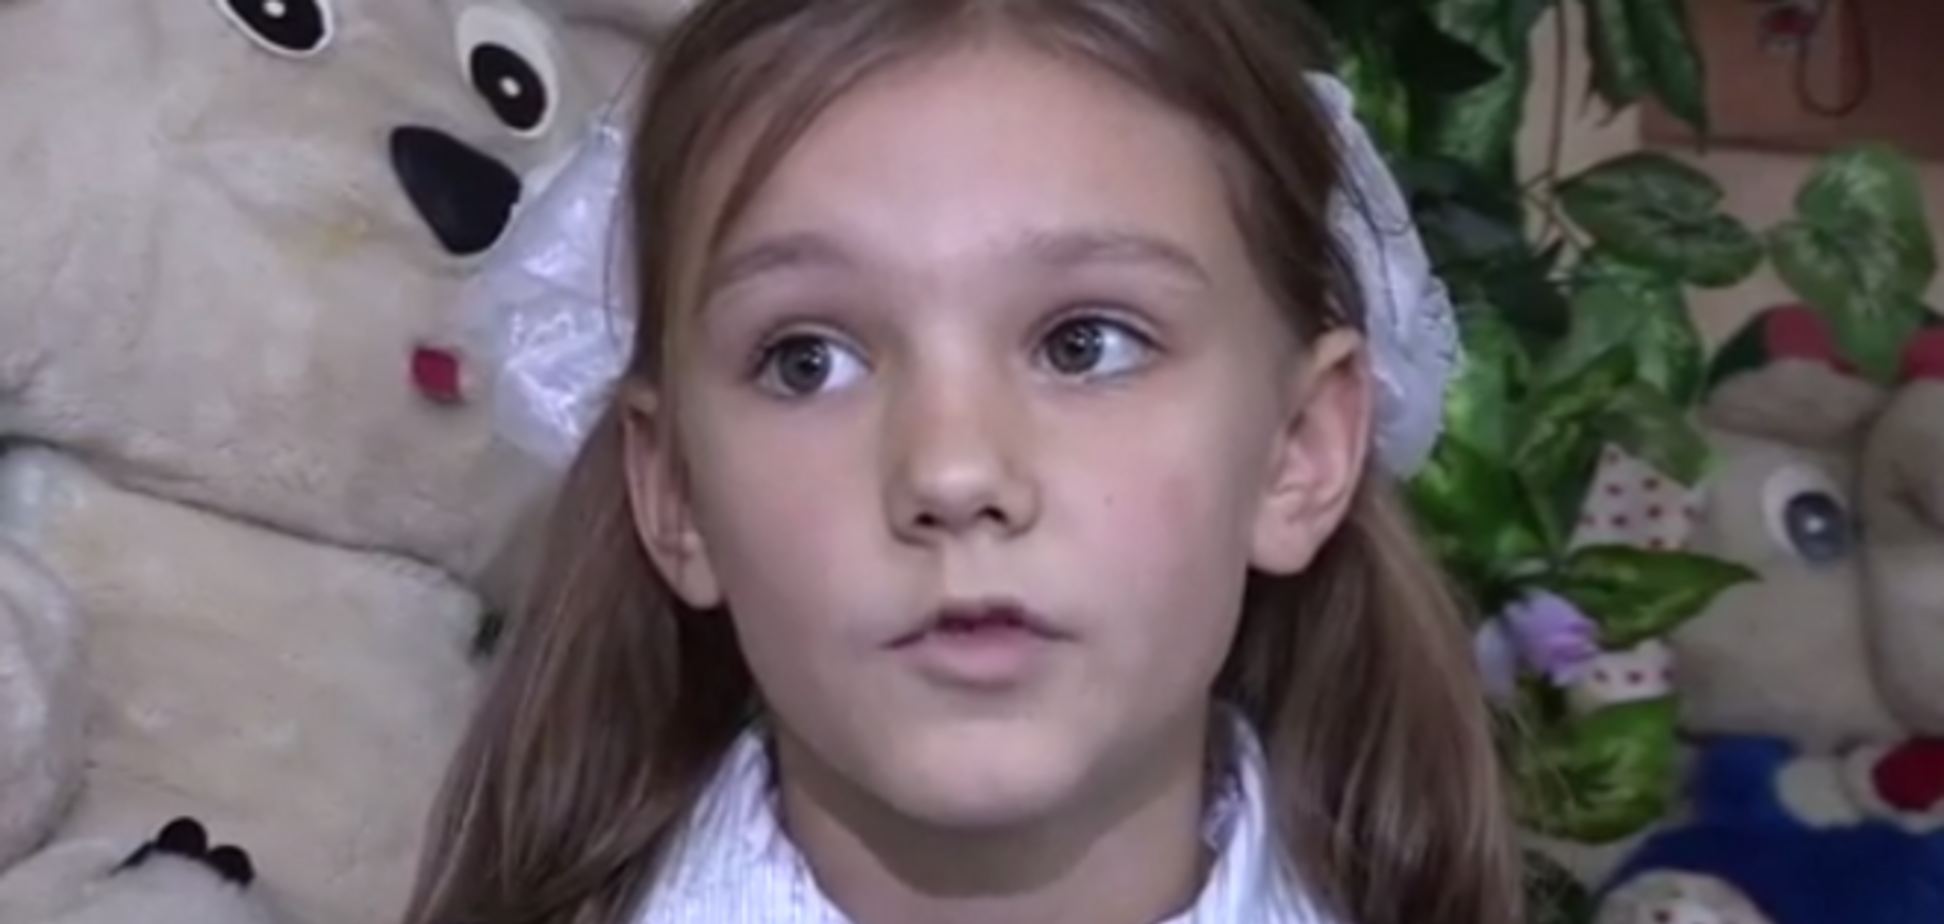 Устами младенцев: видео детского прогноза конфликта Украина-Россия на 2015 год